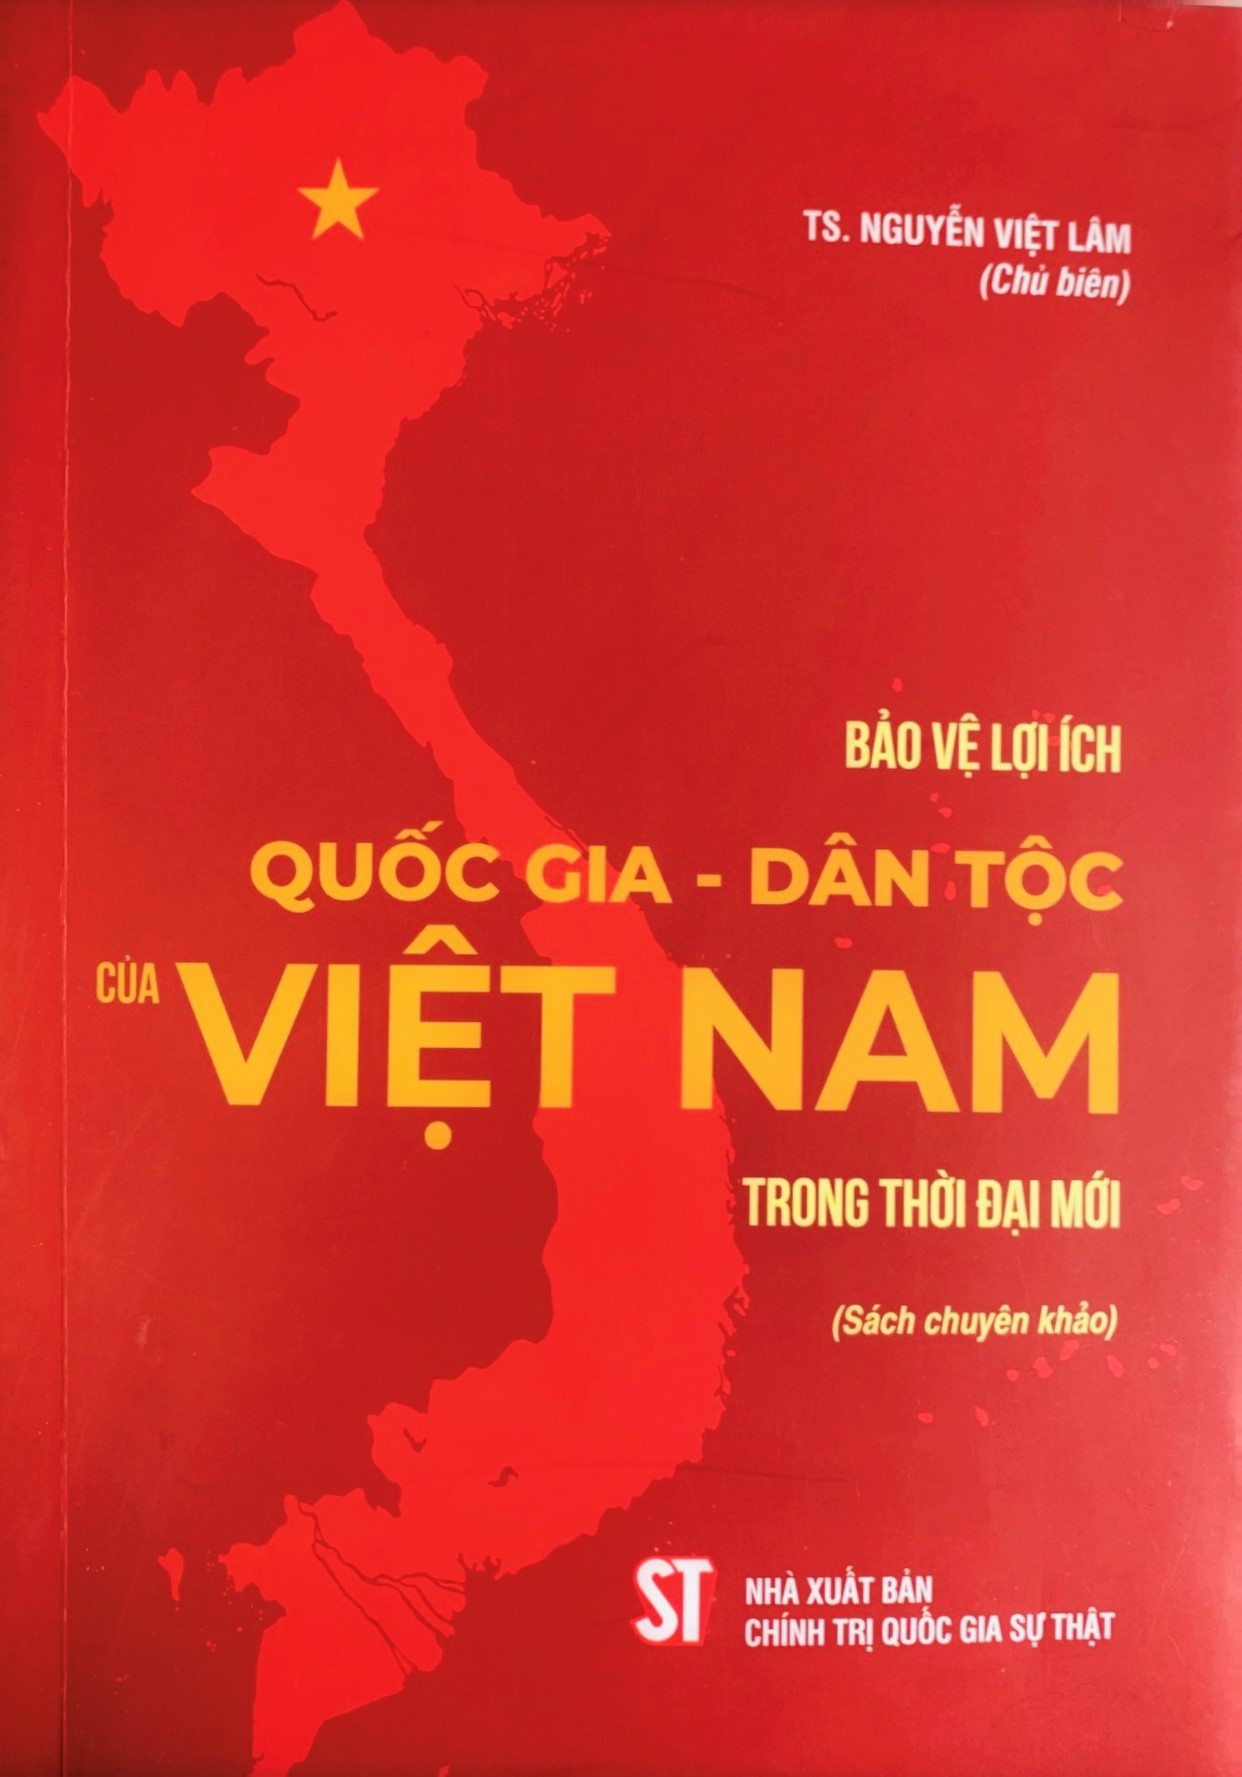 Bảo vệ lợi ích quốc gia - dân tộc của Việt Nam trong thời đại mới